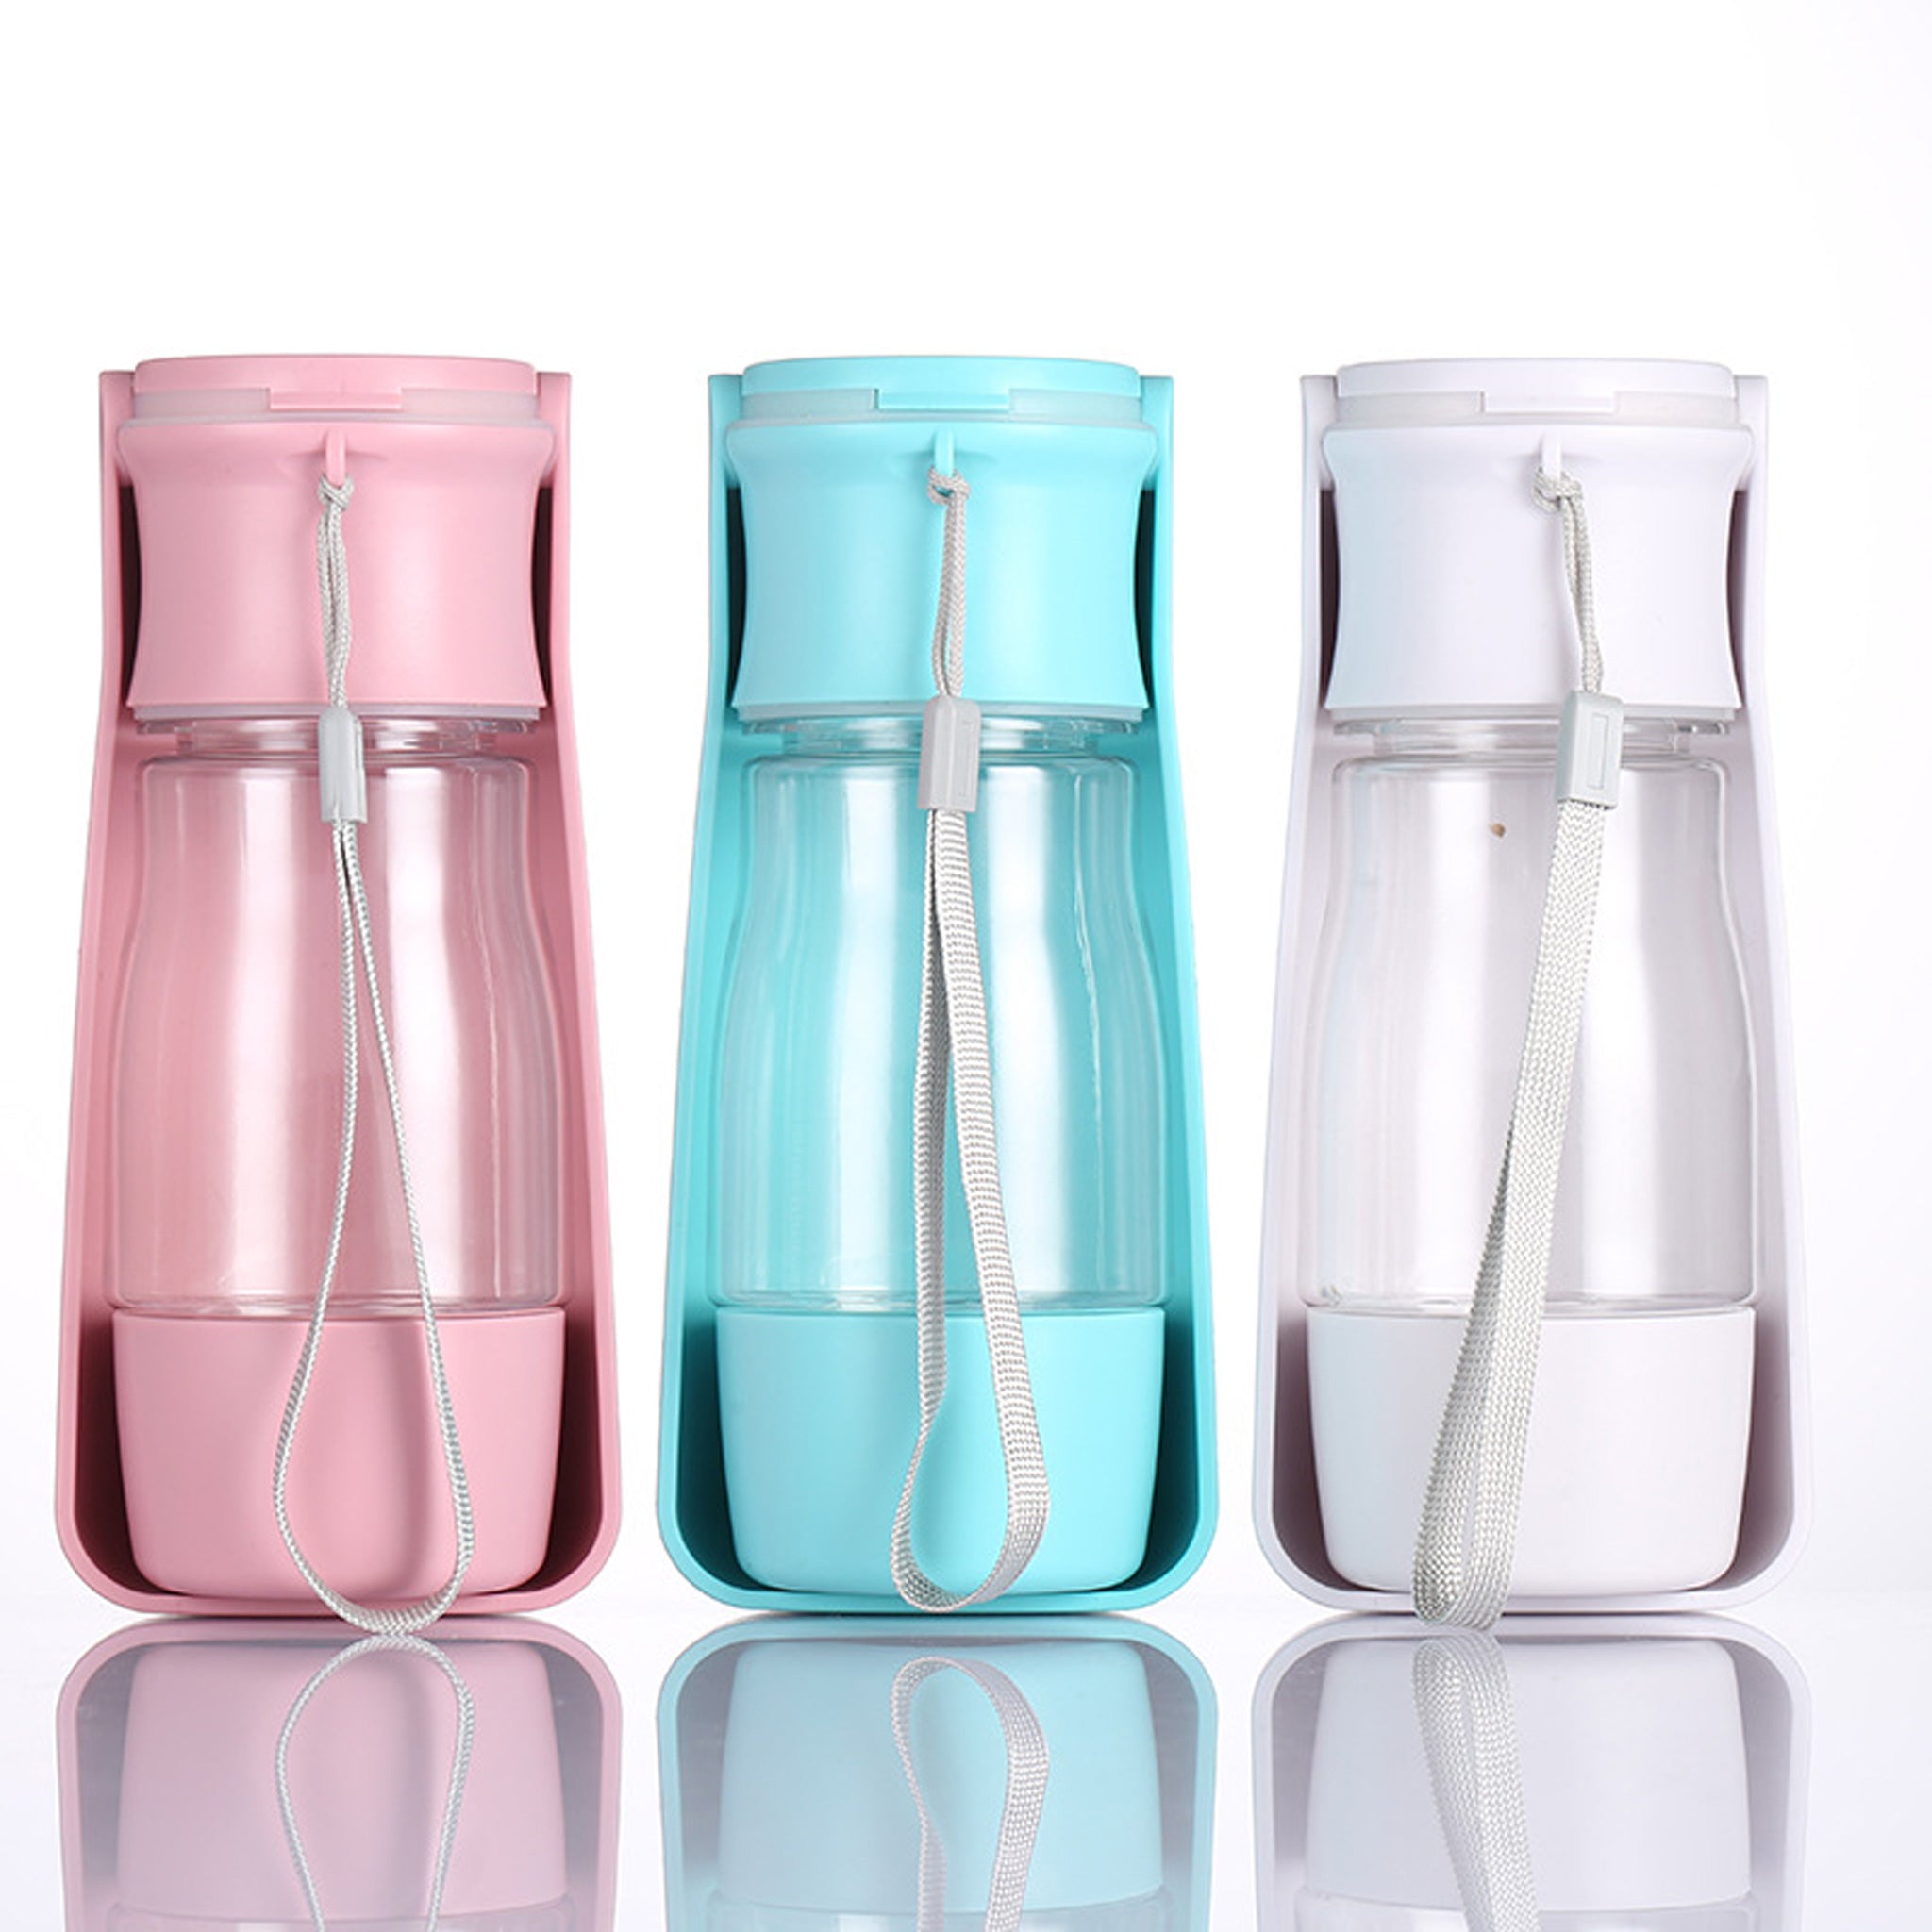 Vse tri barvne kombinacije steklenice postavljene druga poleg druge na belem ozadju